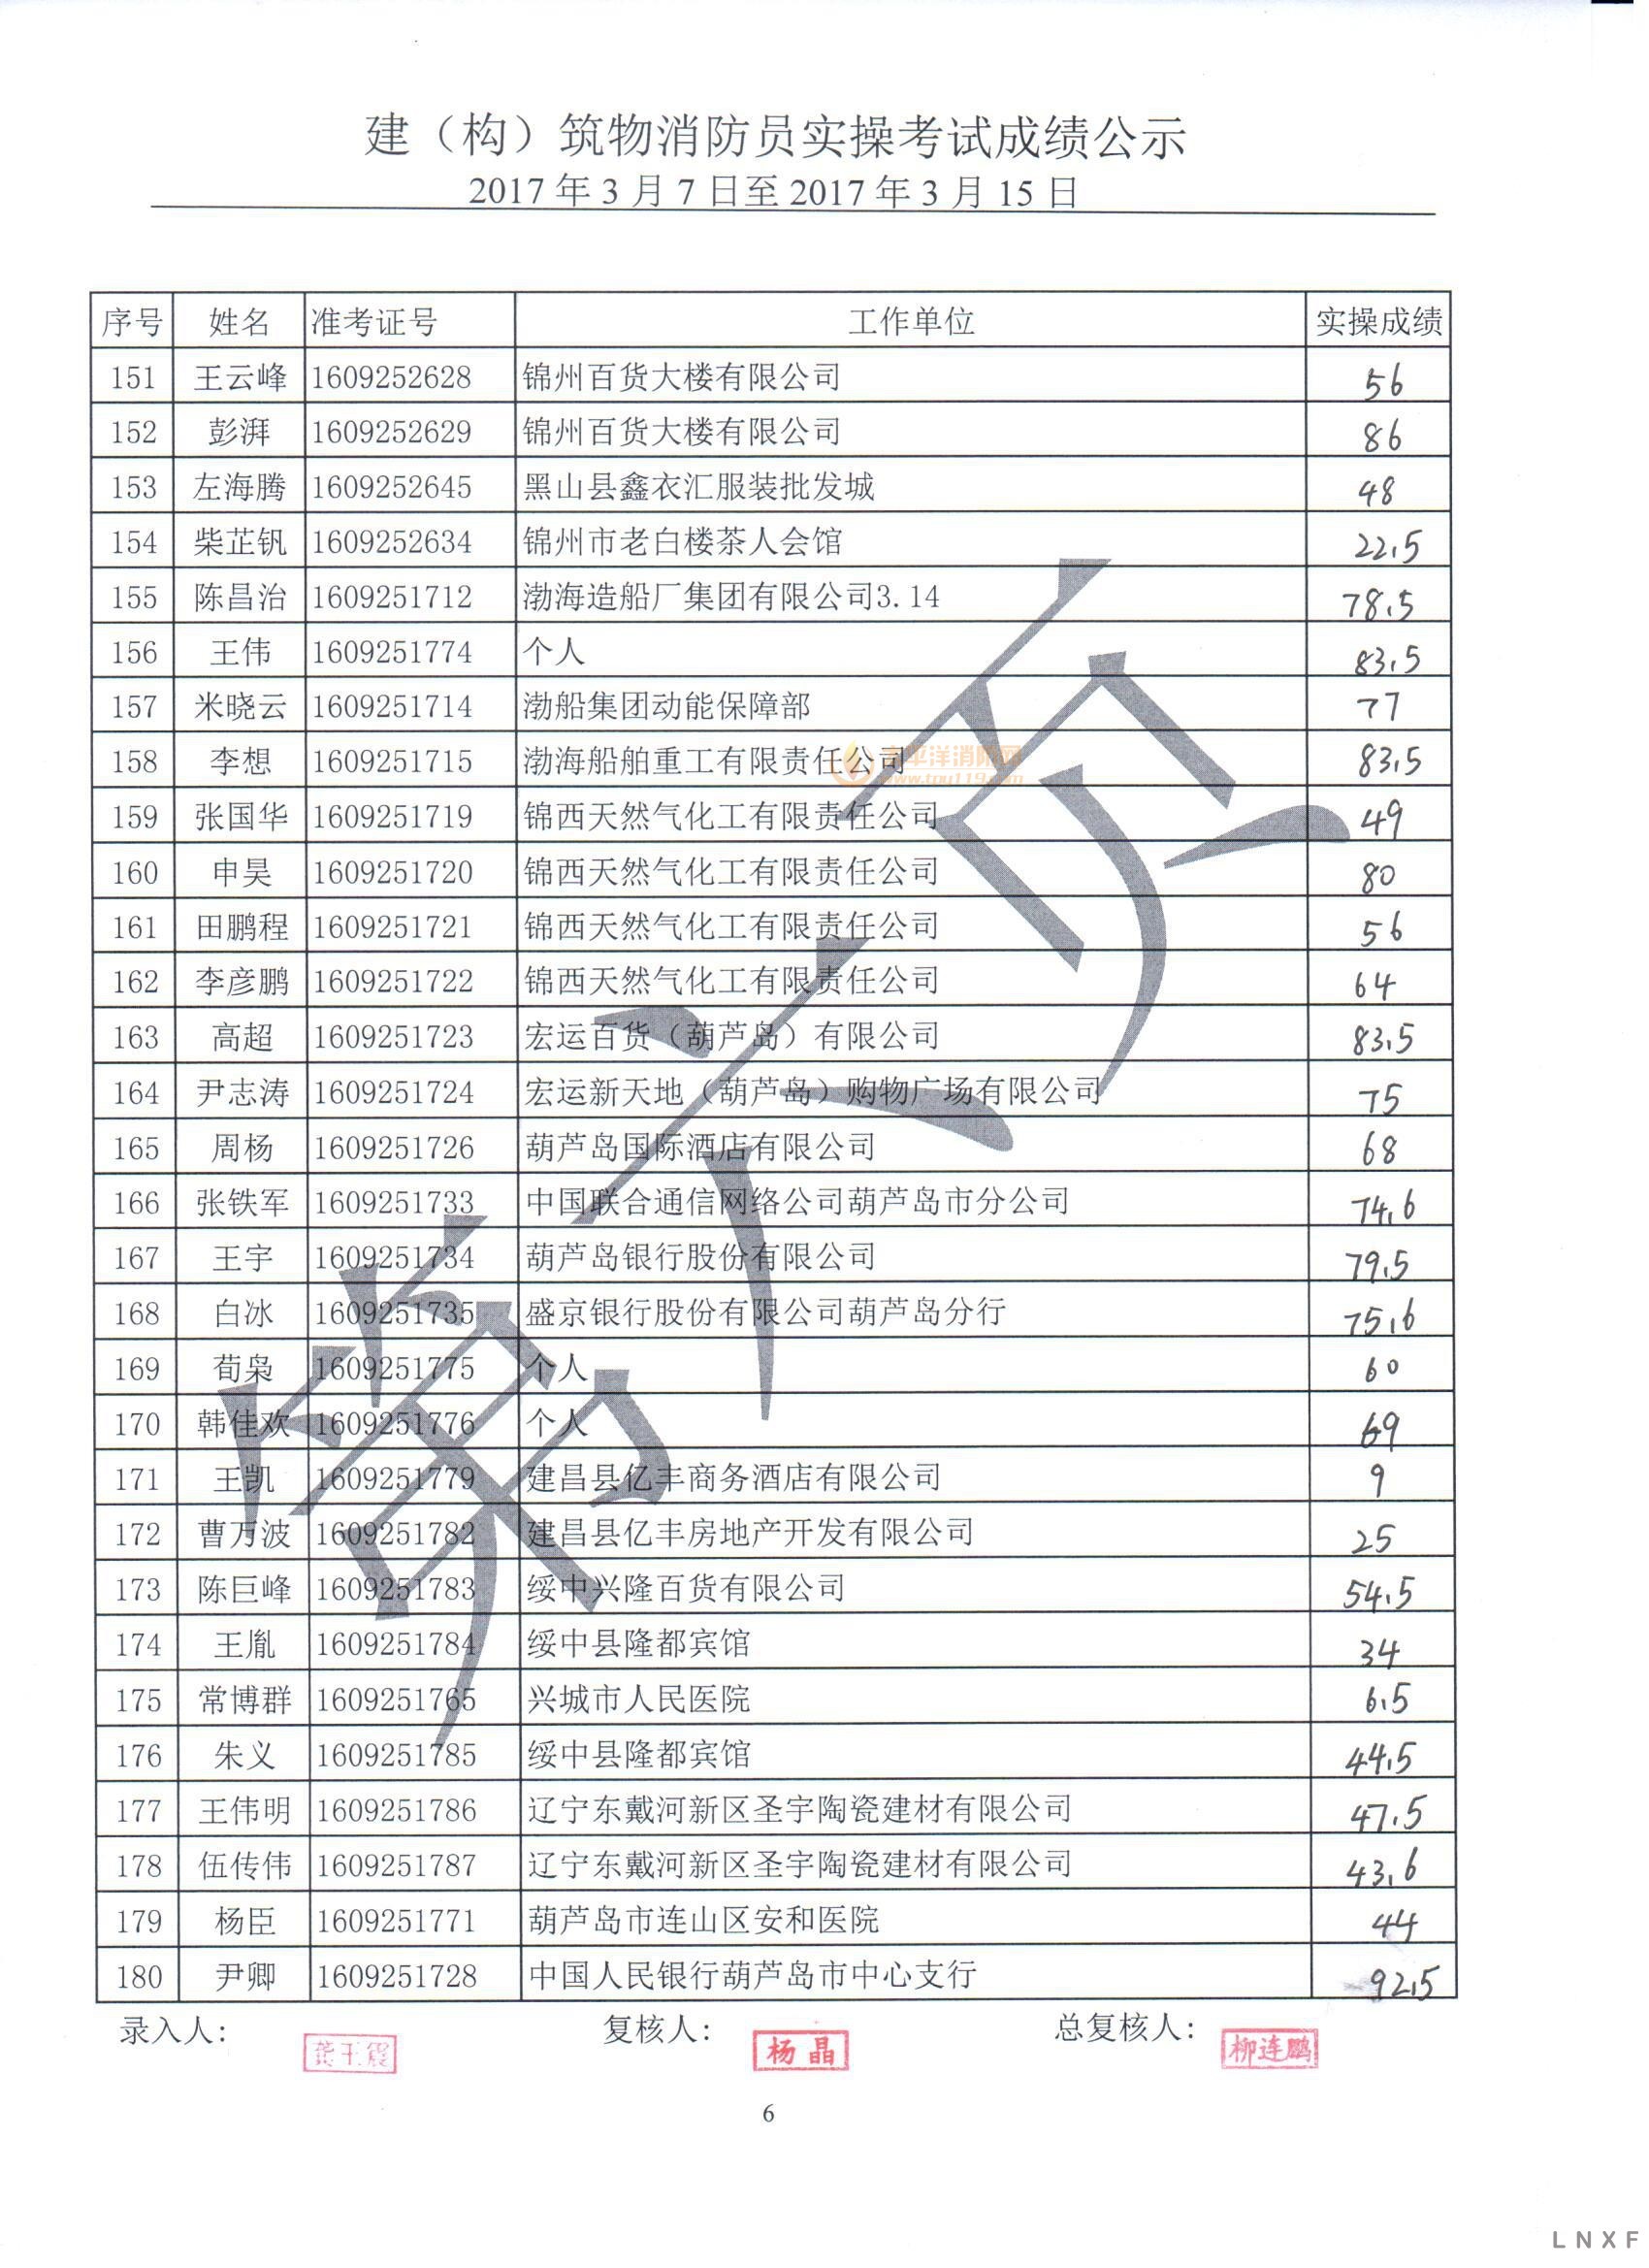 辽宁2017年（3.07-03.15） 建构筑物消防员实操考试成绩公示